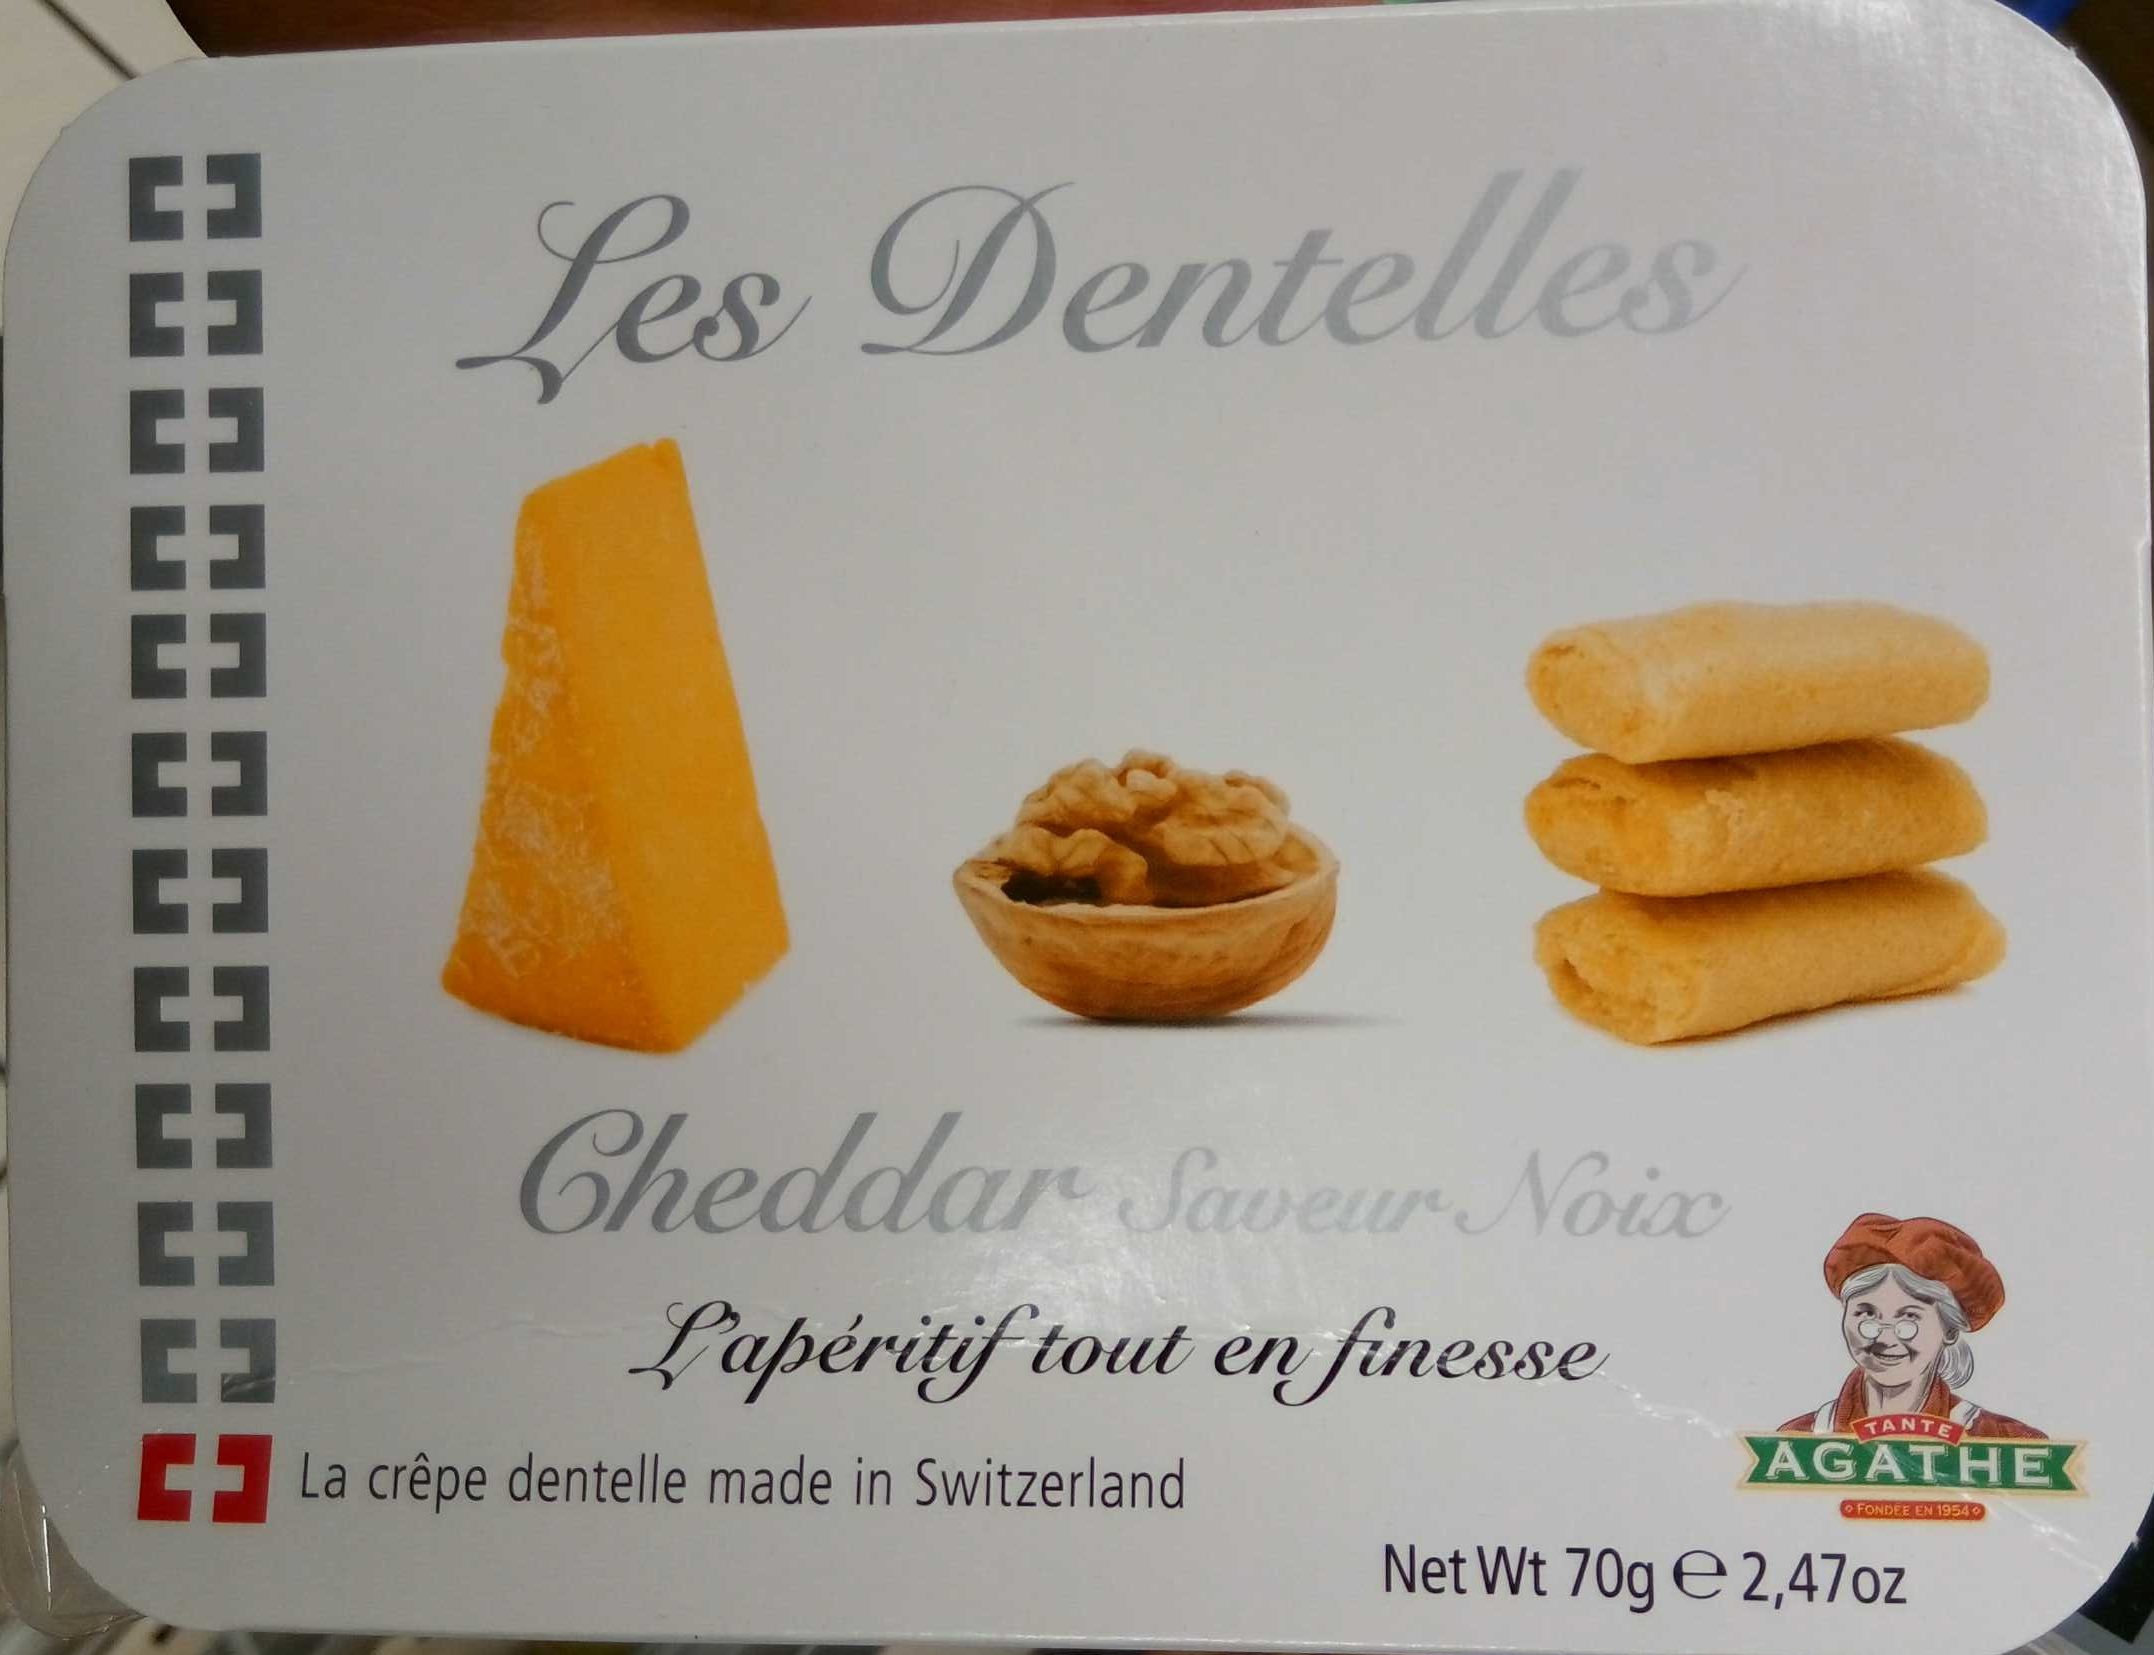 Les Dentelles Cheddar saveur noix - Product - fr